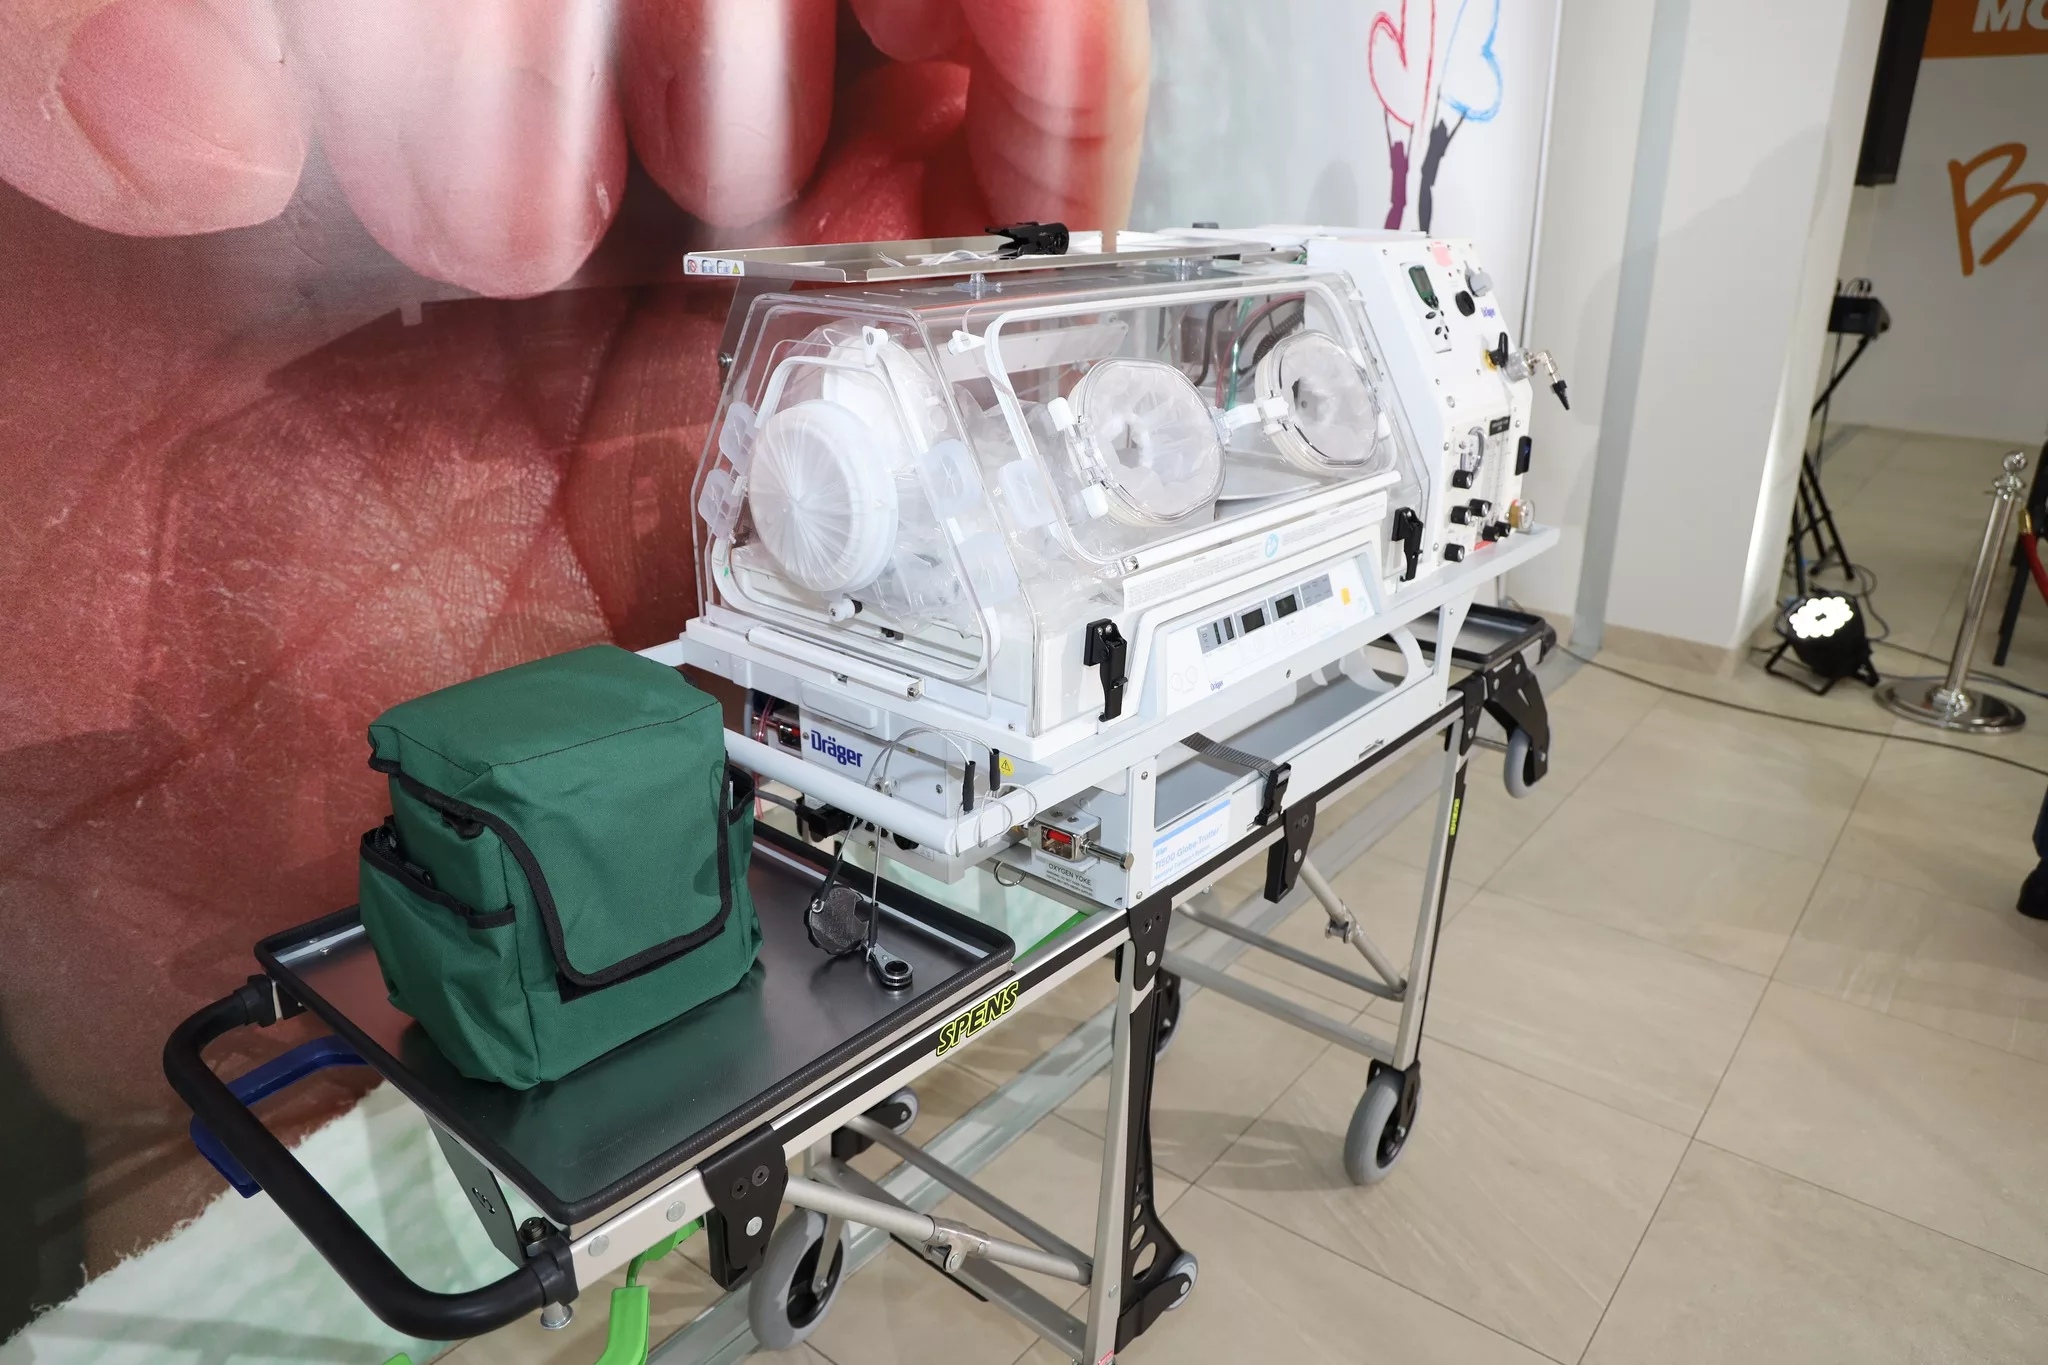 Neonatalni transportni inkubator i oprema za zbrinjavanje novorođenčadi stigli u zvorničku bolnicu (FOTO)